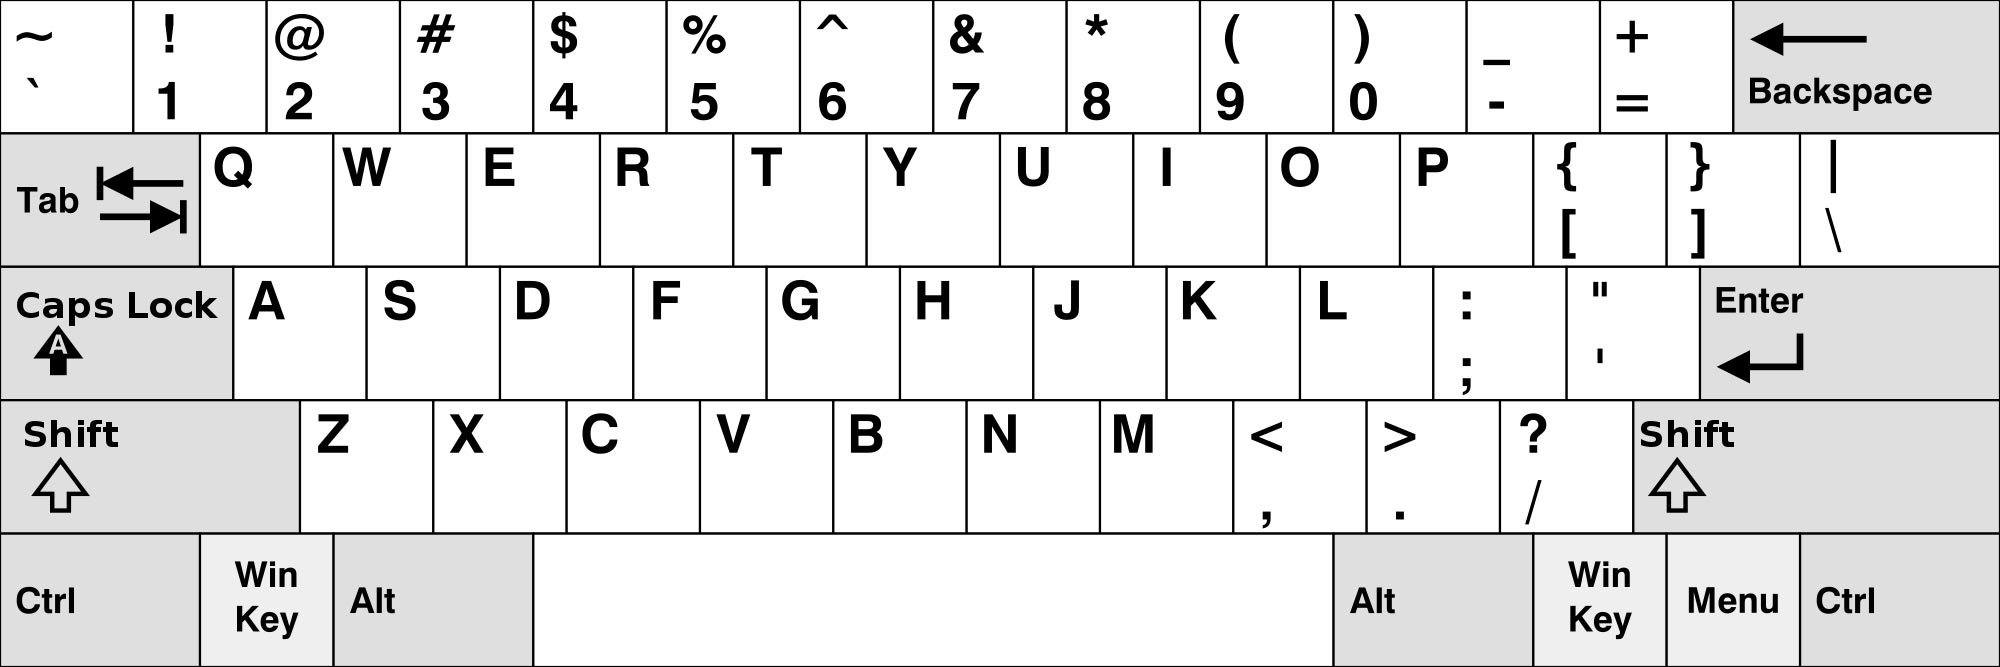 Moviente Rudyard Kipling Implementar Historia del teclado QWERTY